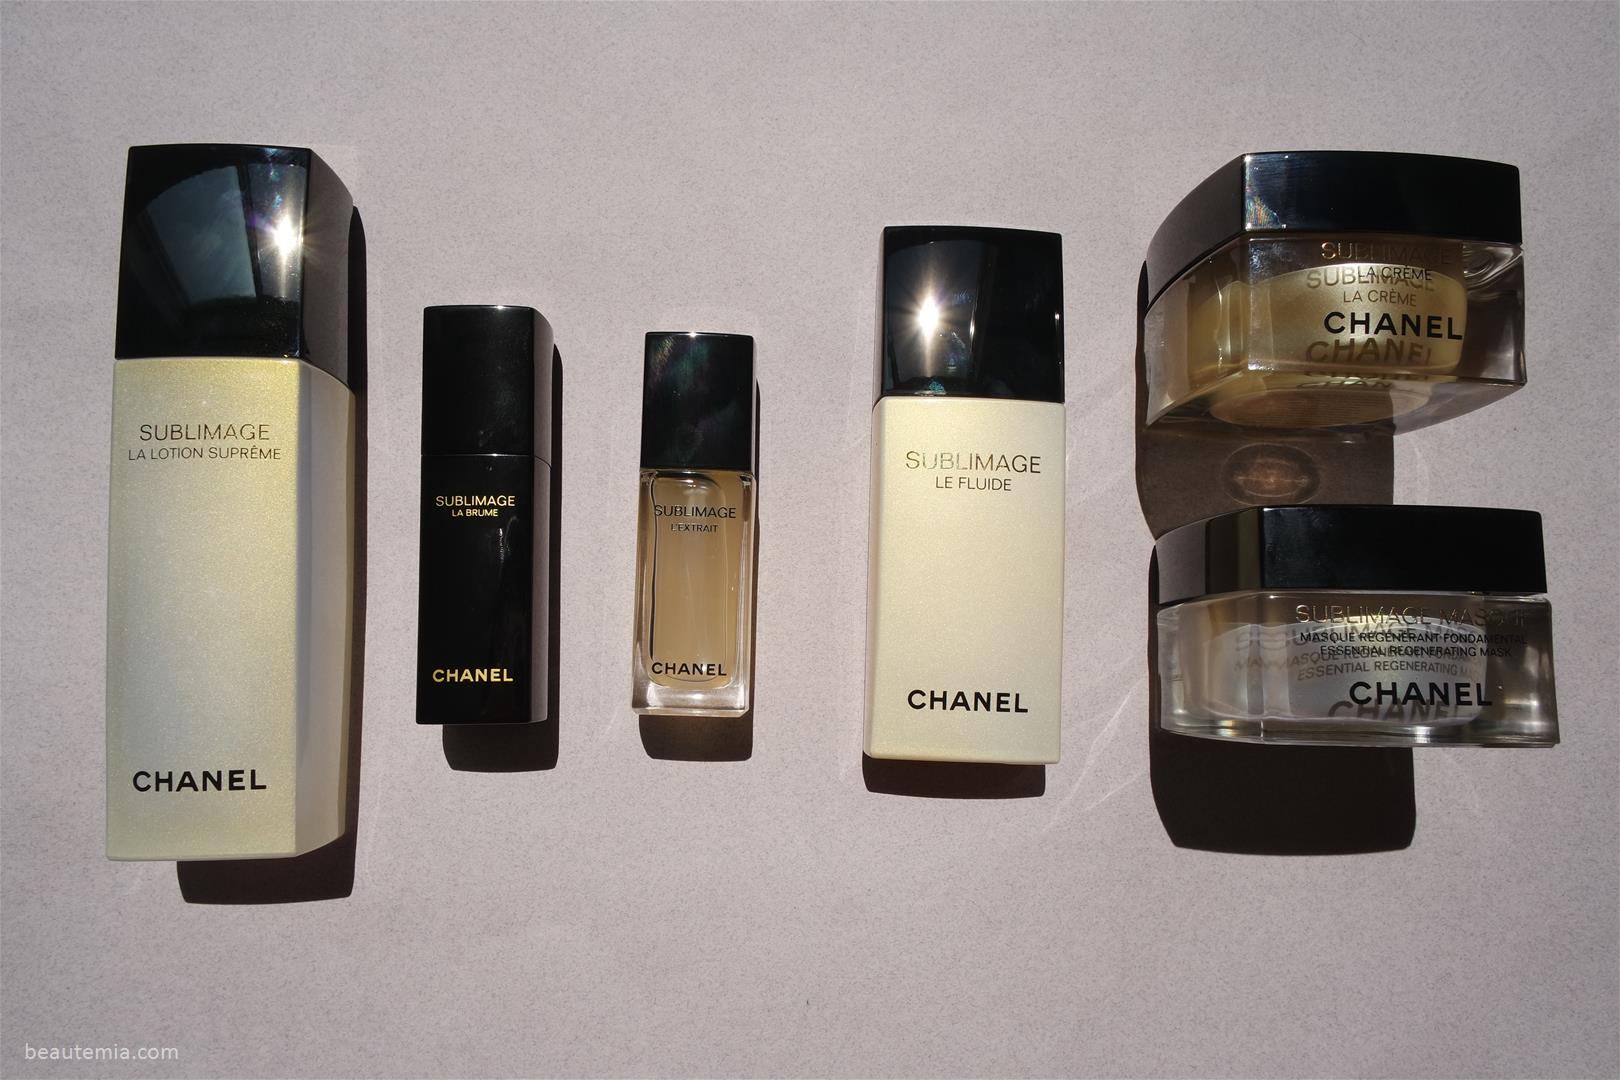 Chanel Review > Sublimage La Crème (Texture Suprême/ Rich texture